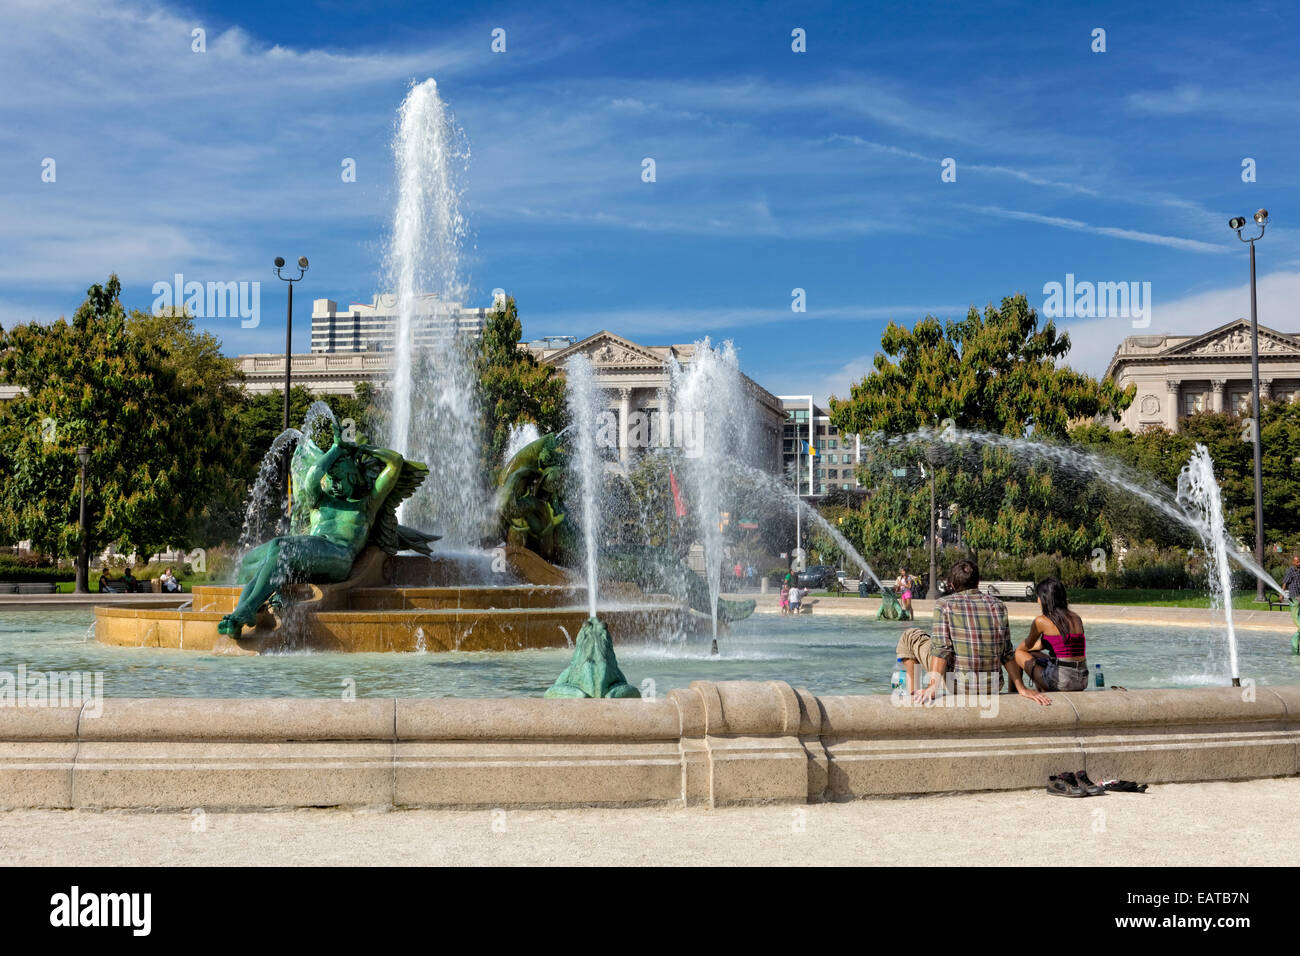 Le Swann Memorial Fountain est situé dans la région de Logan Circle, Philadelphie, Pennsylvanie. Aussi appelée la fontaine de Trois Rivières... Banque D'Images